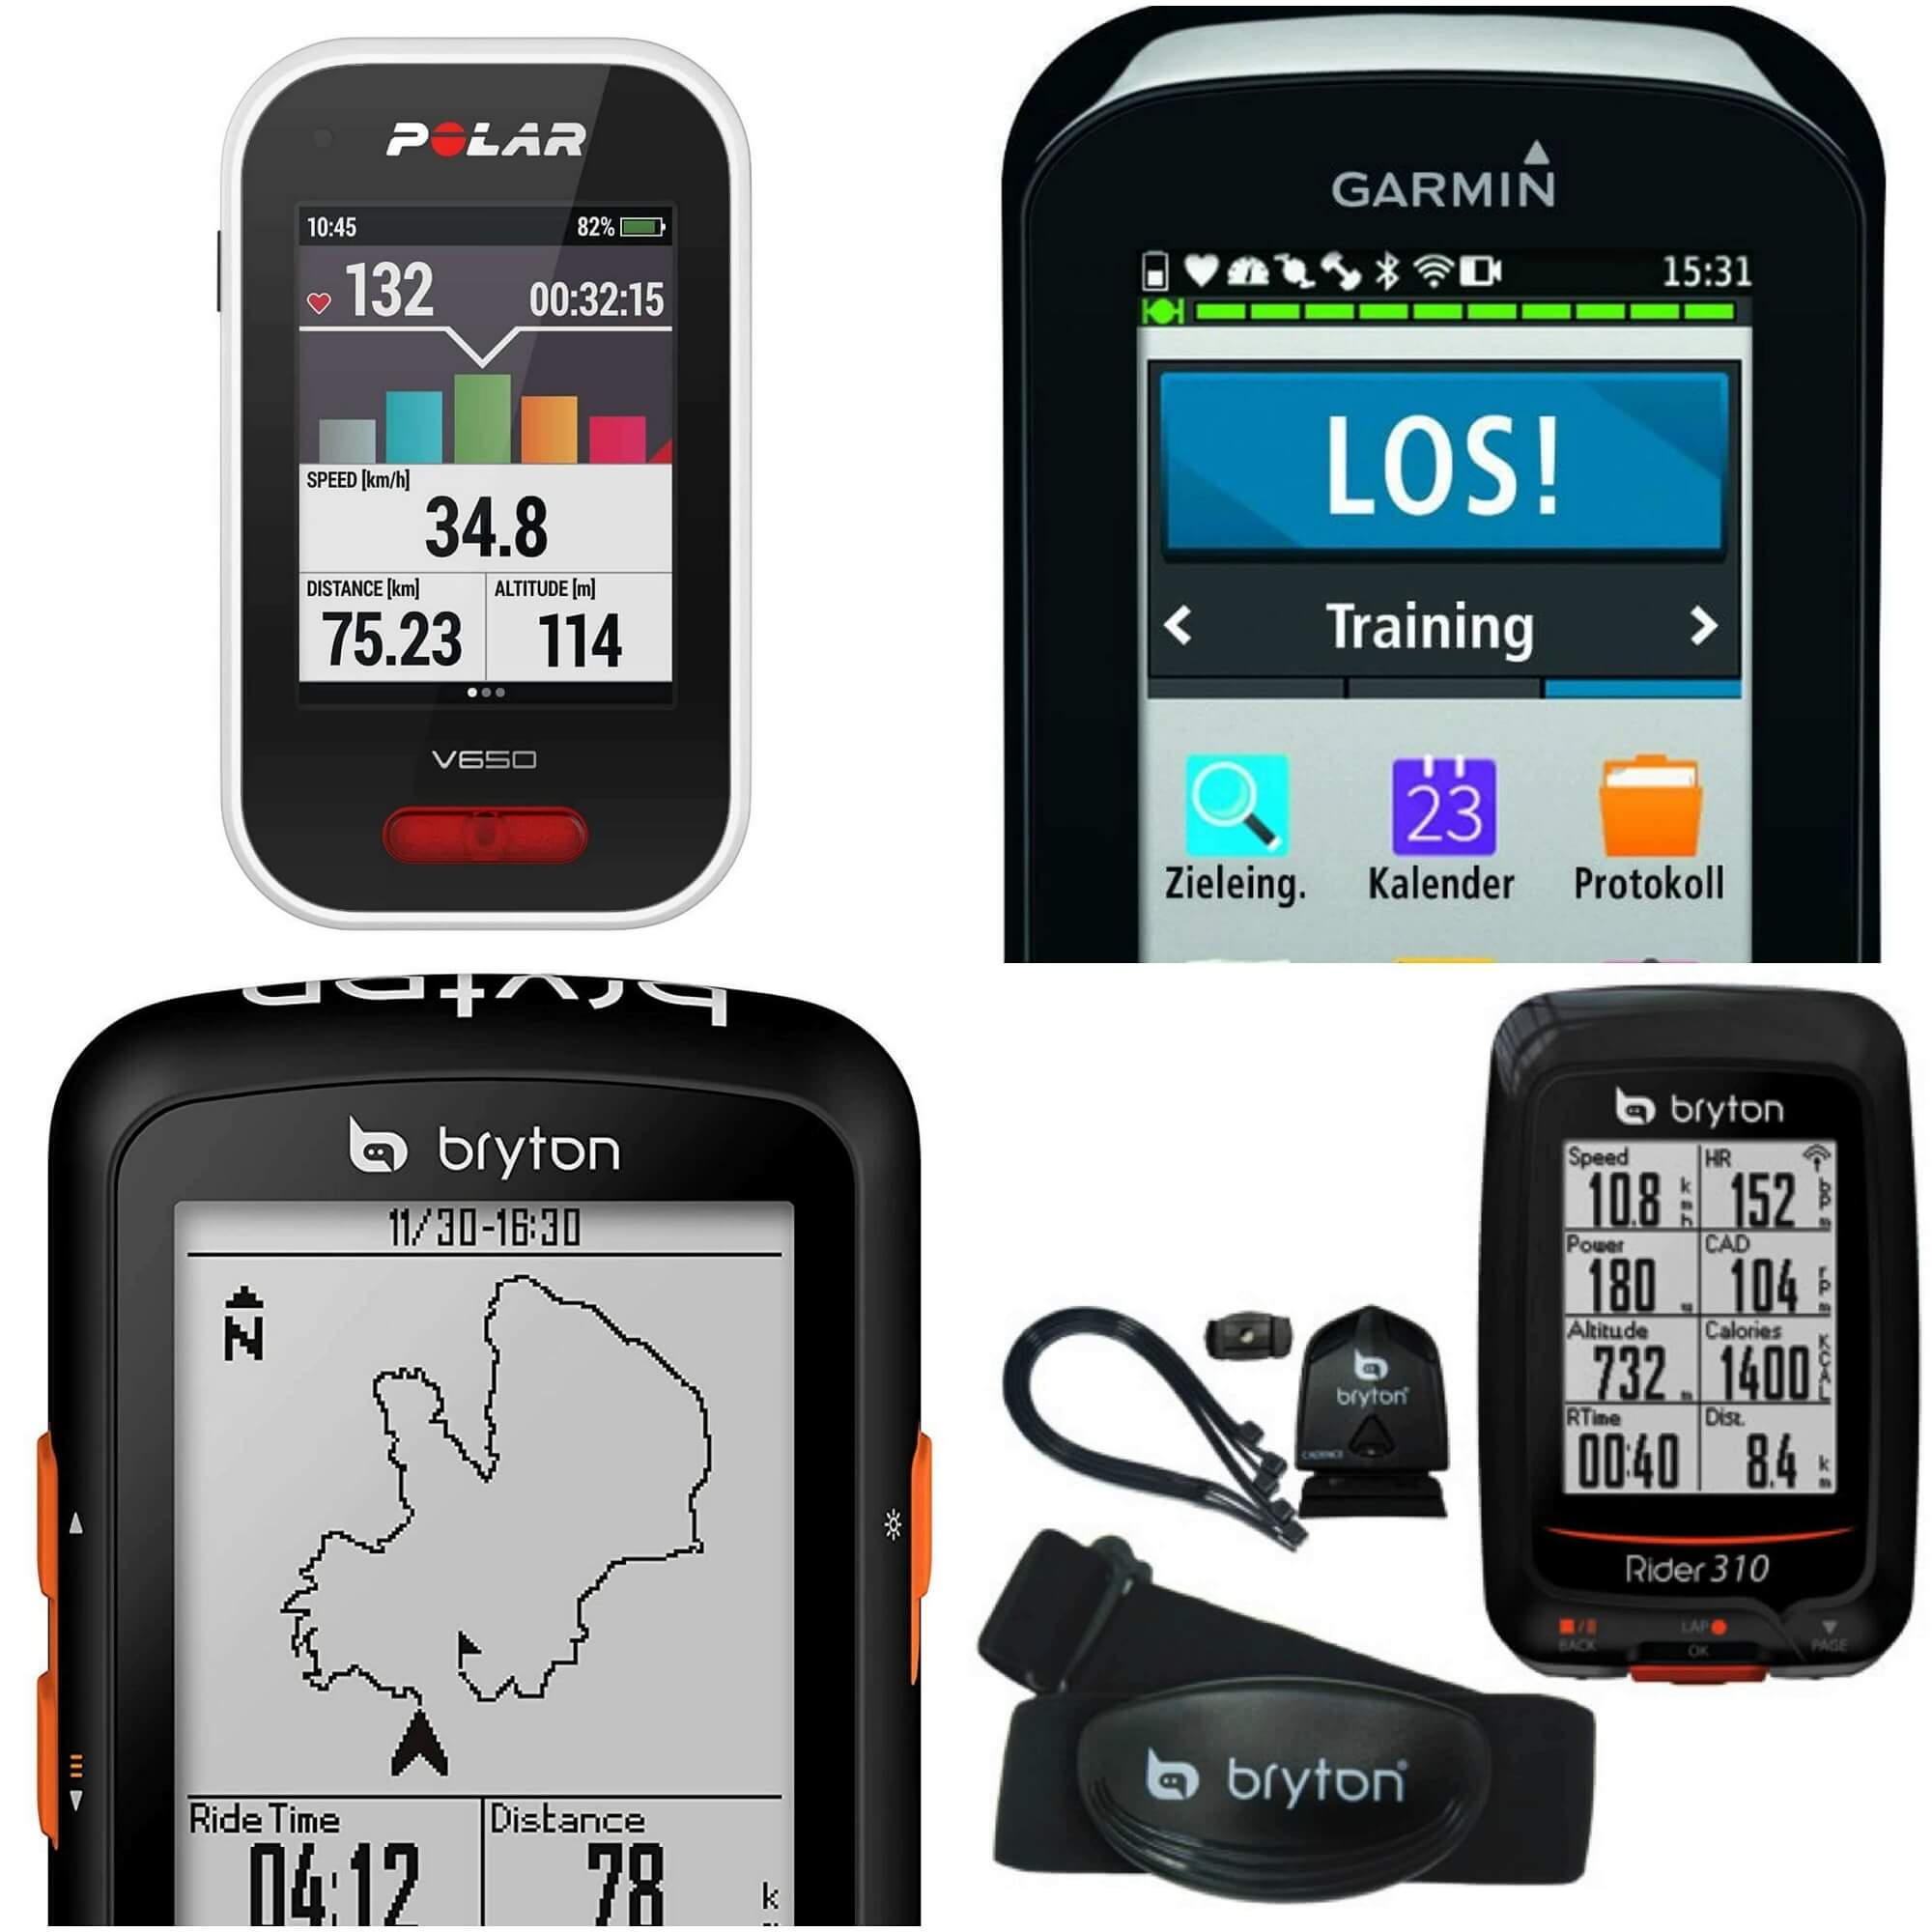 I migliori ciclocomputer GPS in base alla fascia di prezzo - Bikevisor